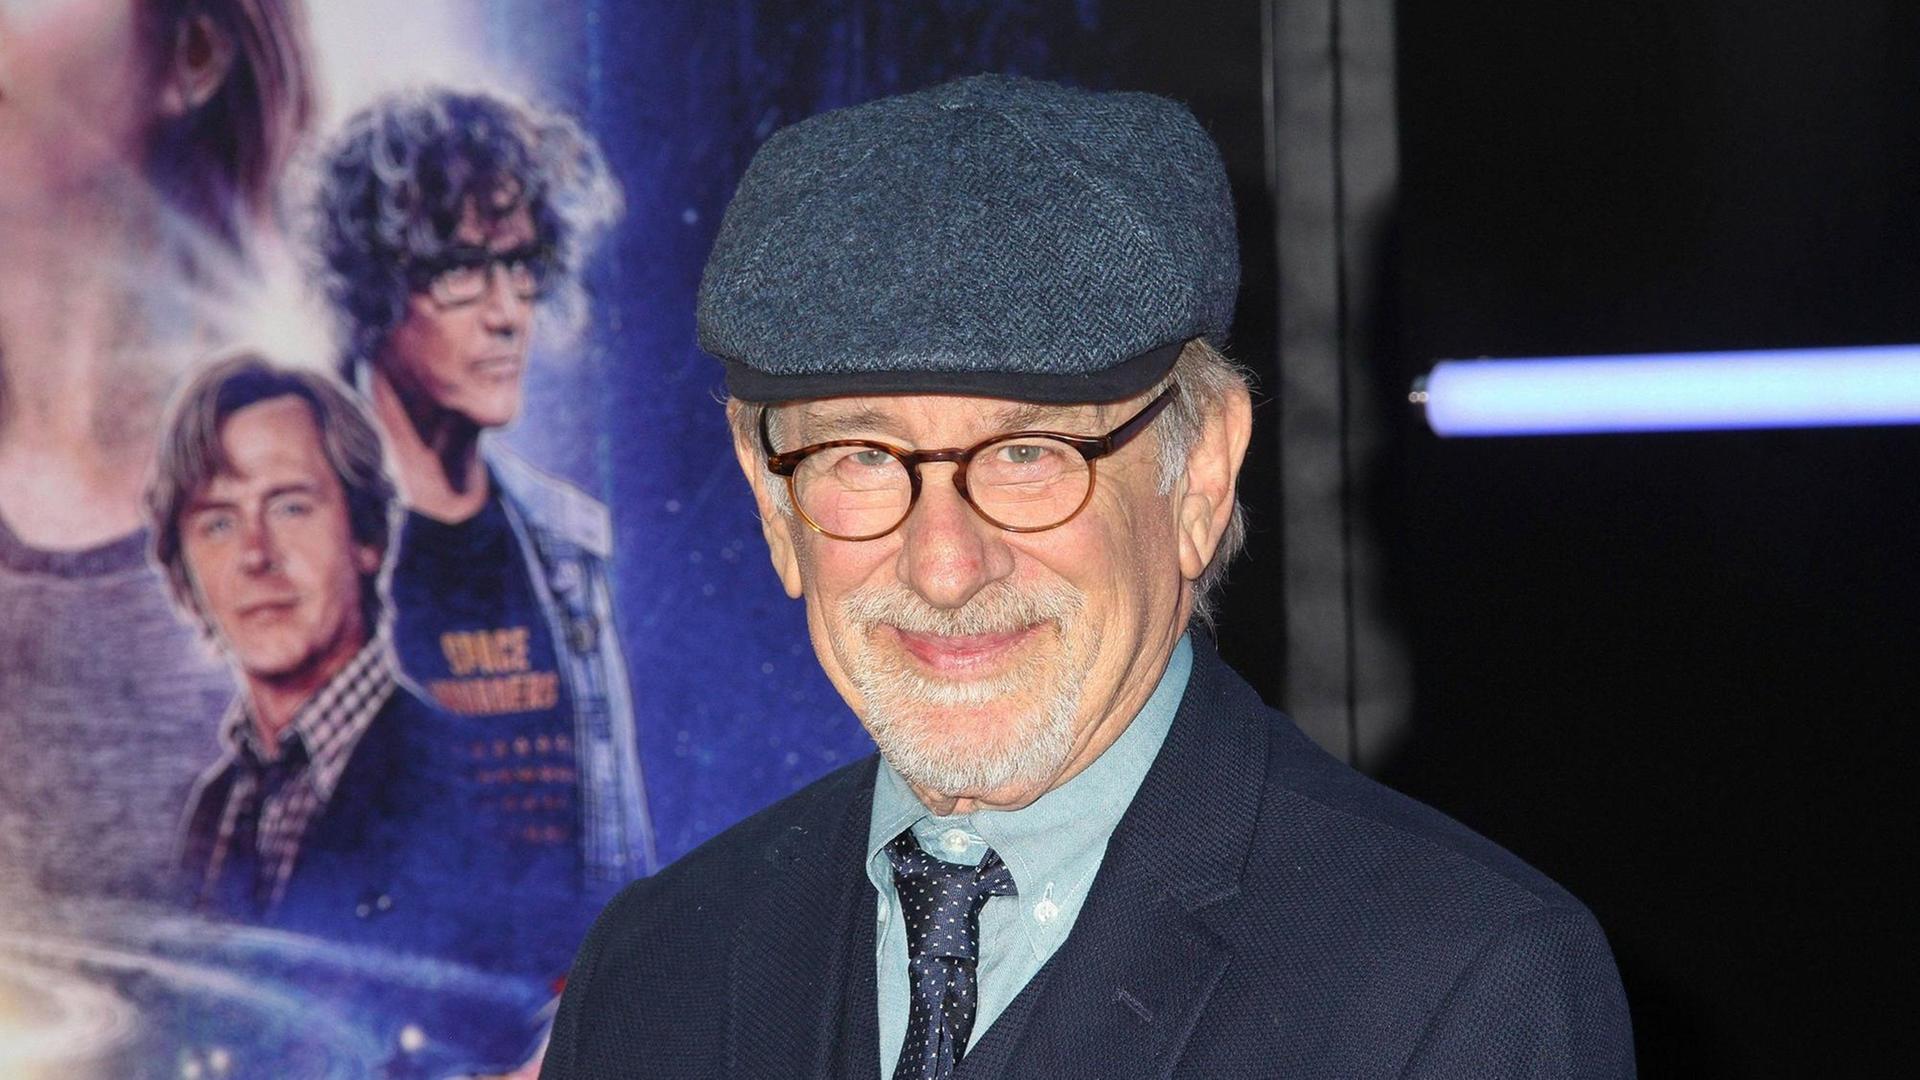 Steven Spielberg, der Regisseur bei der Ready Player One Film Premiere am 26.03.2018 in Hollywood, Los Angeles